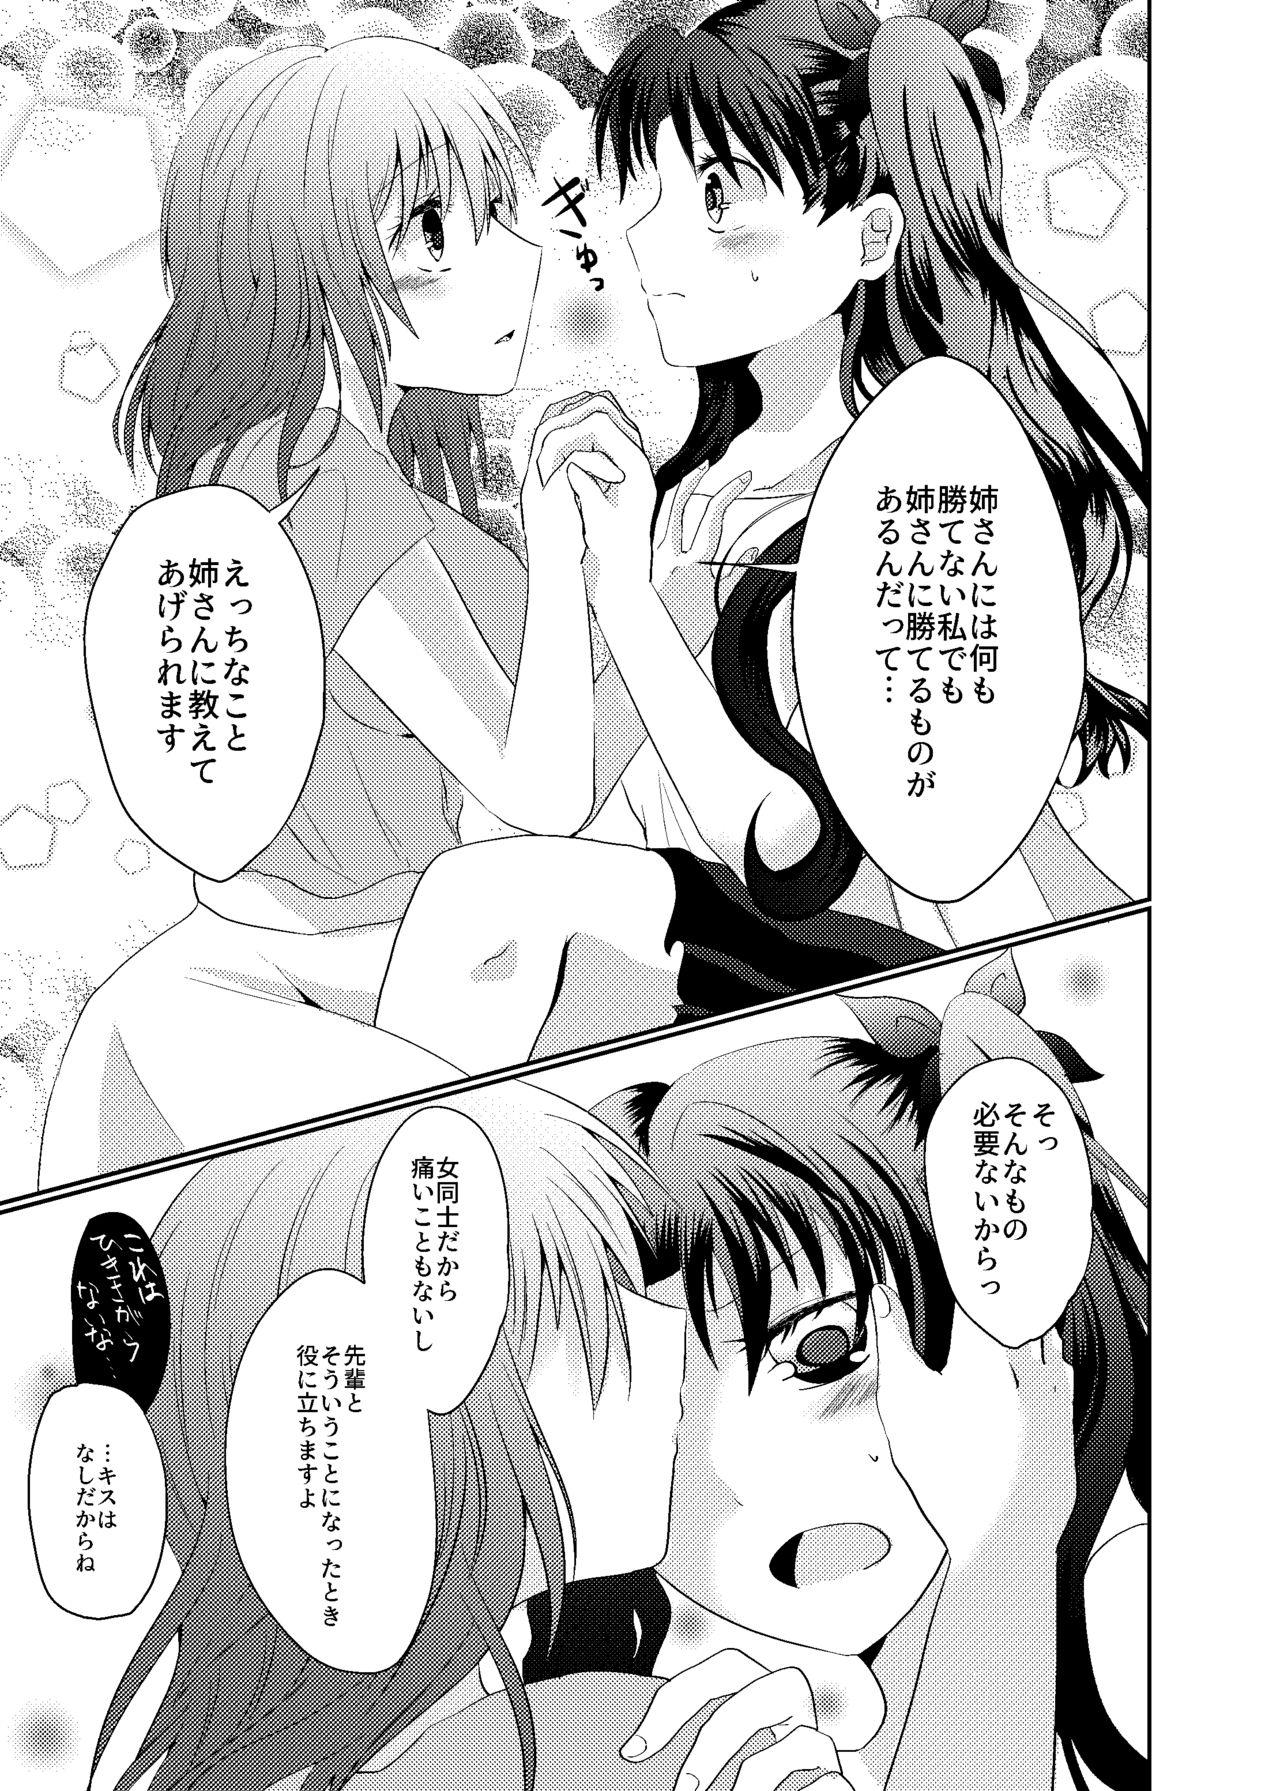 Hiddencam Tosaka Shimai no Atsui Natsu - Fate stay night Orgy - Page 7